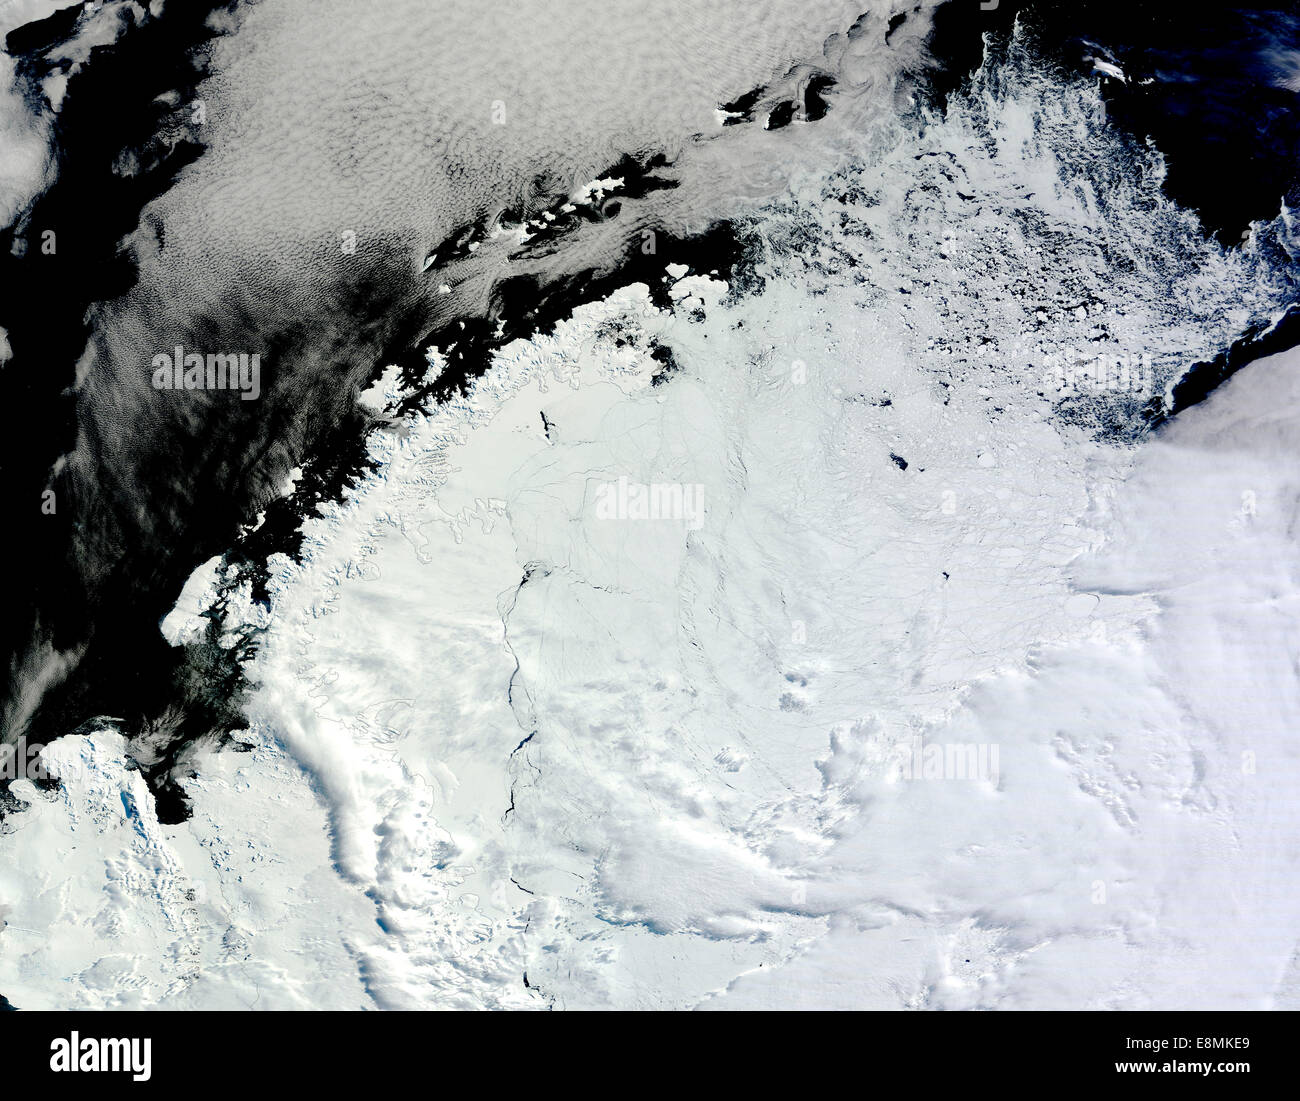 22 février 2013 - les glaces au nord de la mer de Weddell, l'est de la péninsule antarctique. La côte de l'Antarctique Peni Banque D'Images